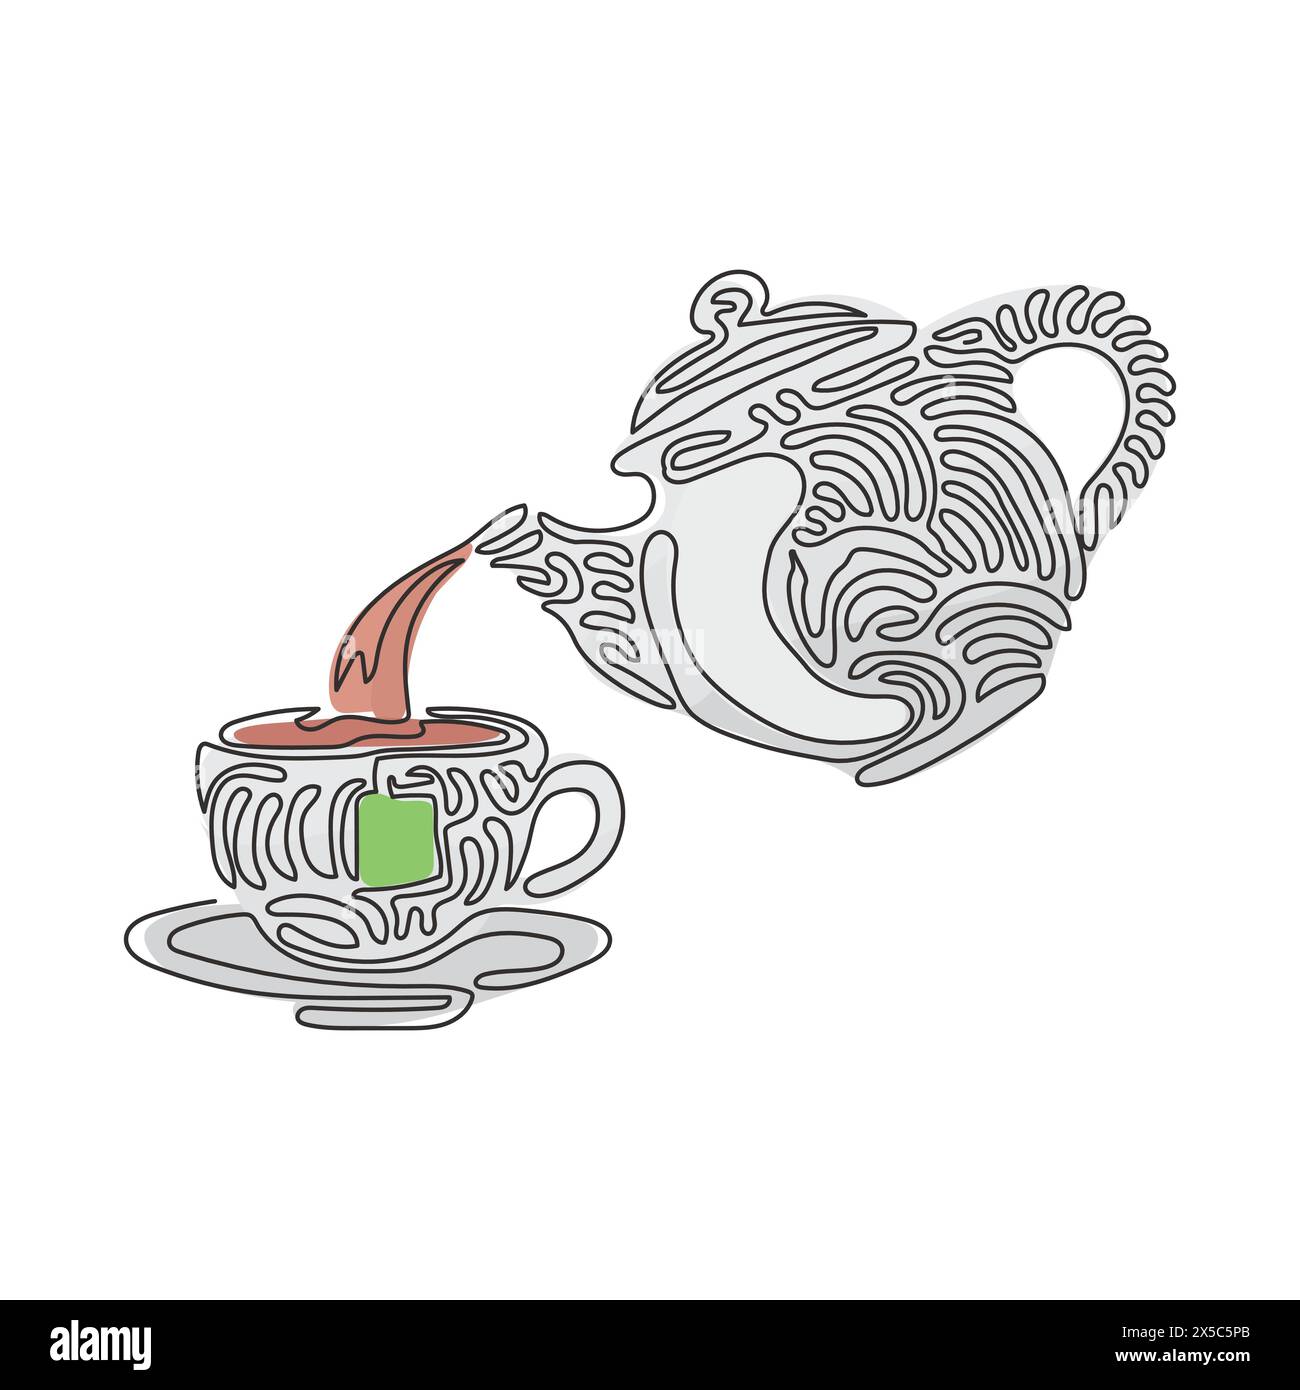 Eine einzelne, durchgehende Teekanne zum Trinken von Tee gießt heißes Wasser in eine Tasse. Frühstücksutensilien. Schwarz-weiß-Vektor. Wirbelnde Lockenform. Dynamisch Stock Vektor